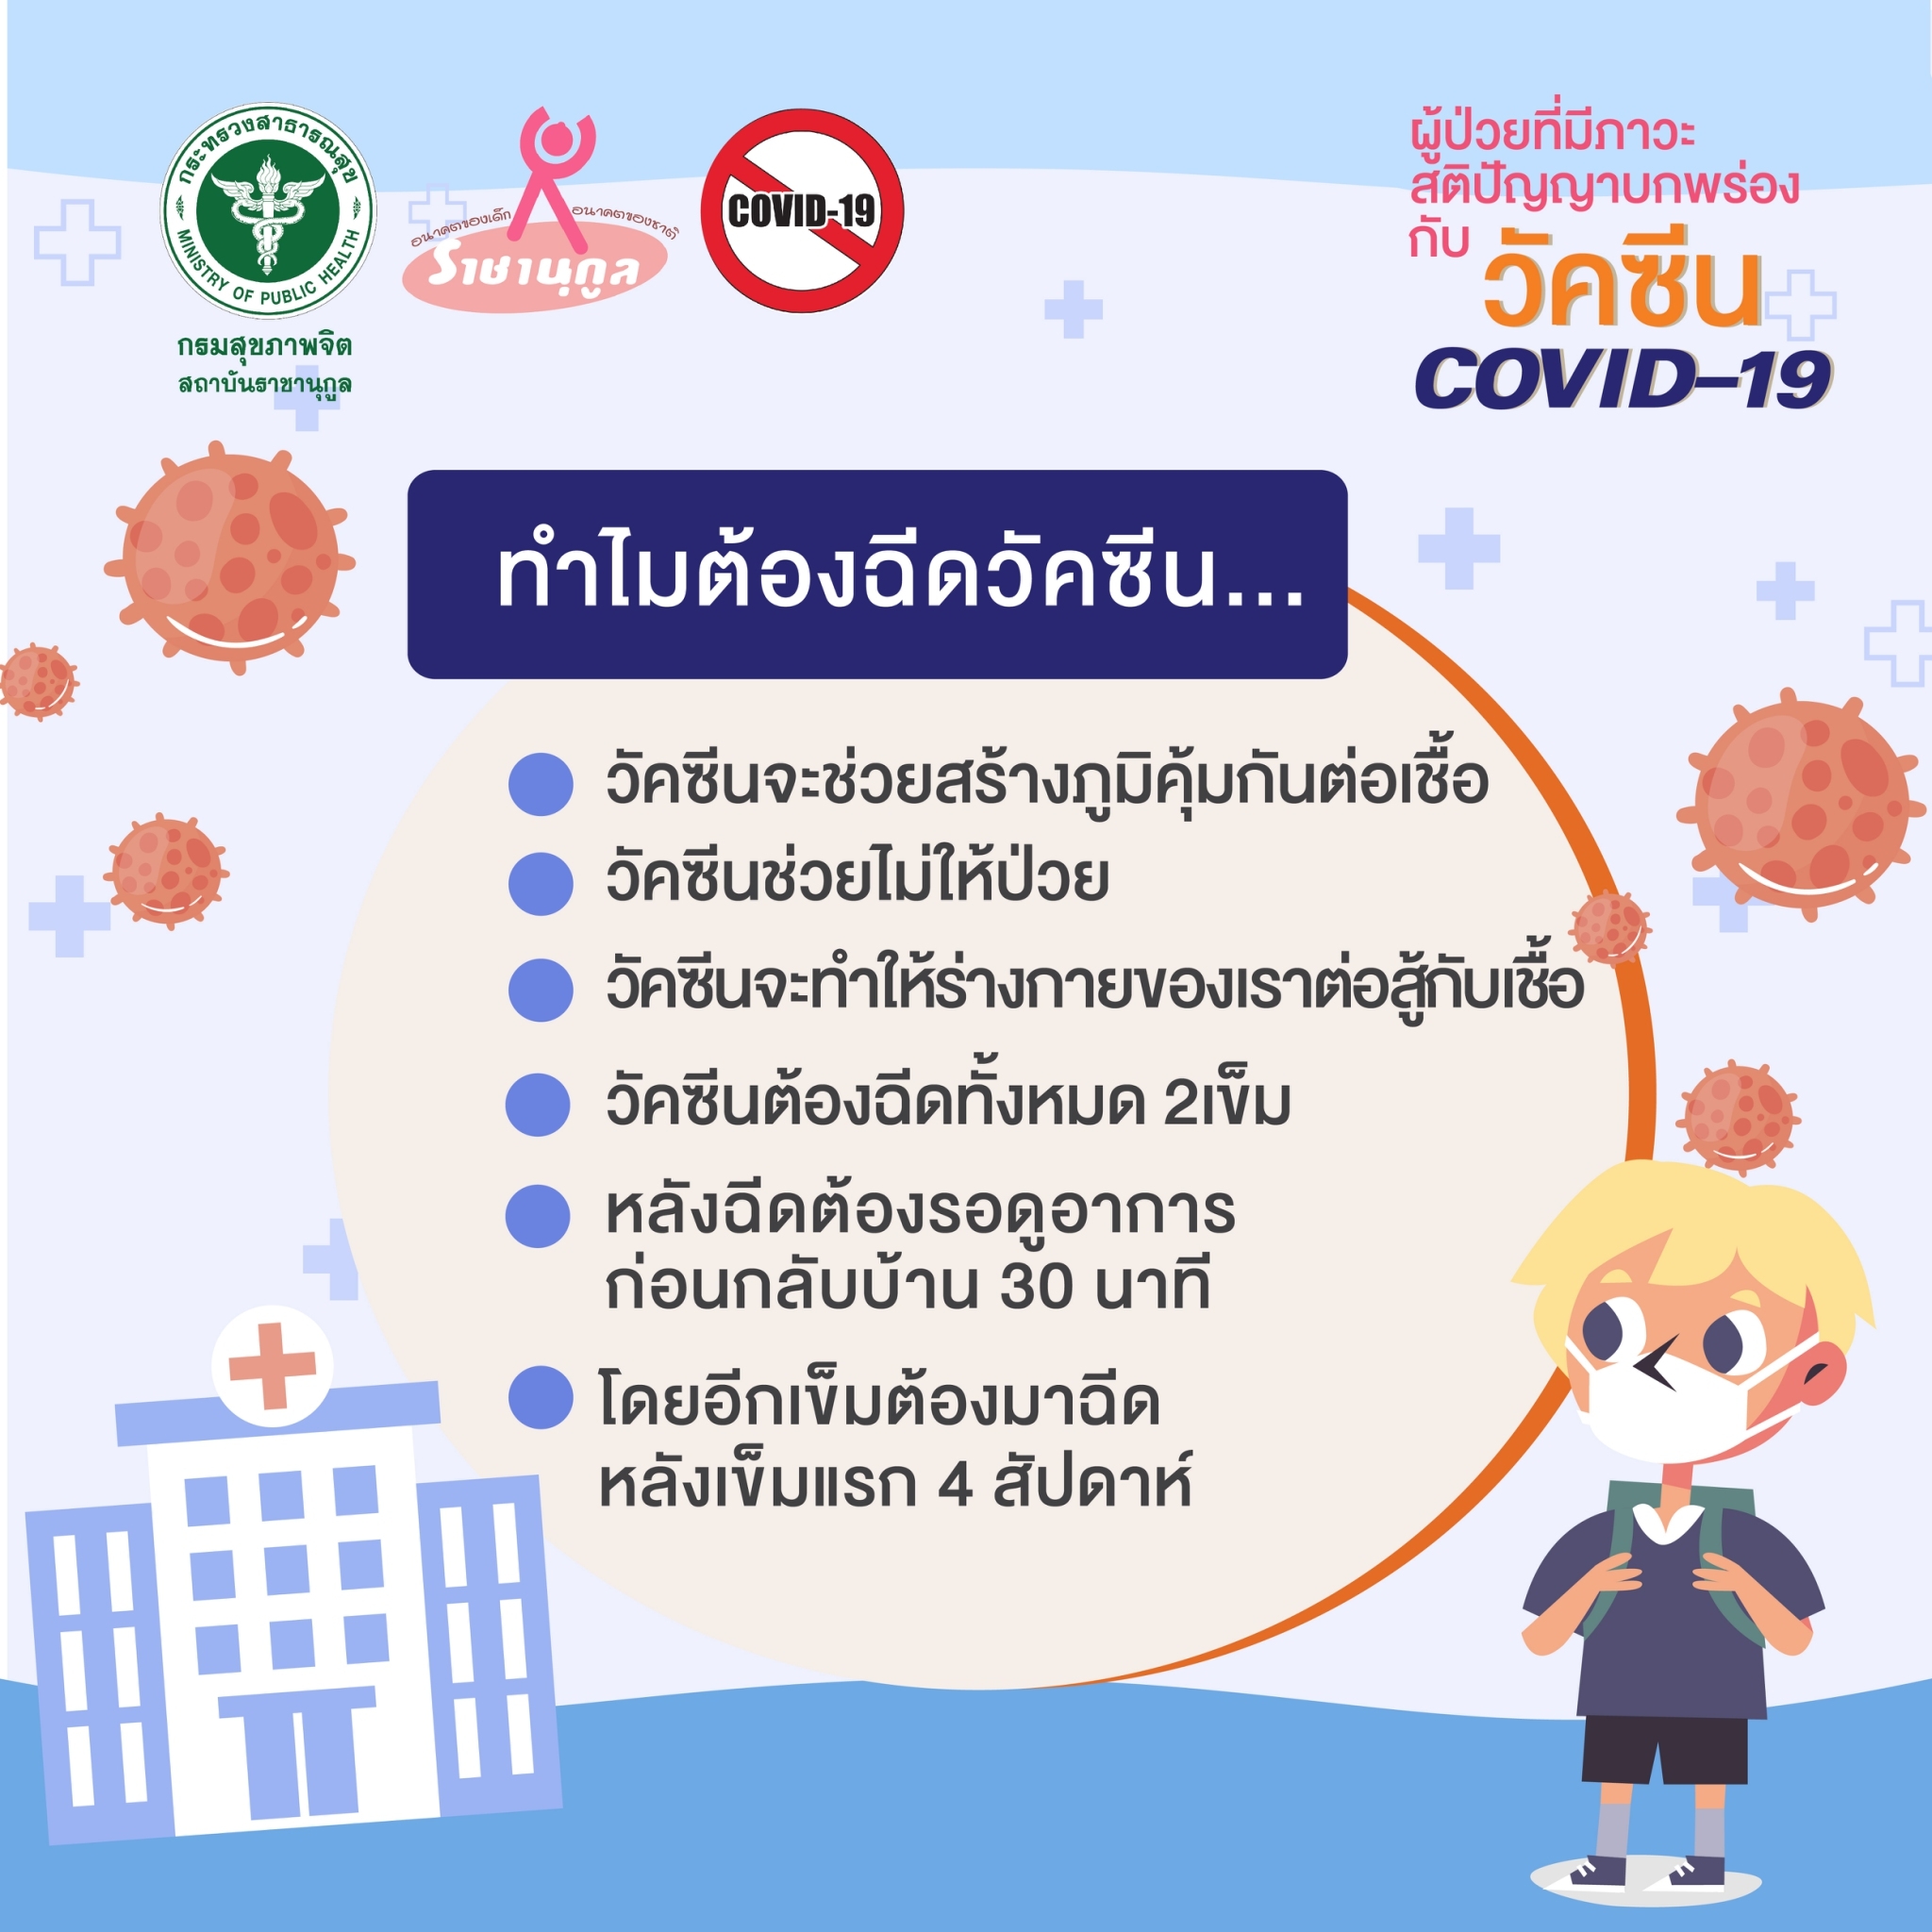 ผู้ป่วยที่มีภาวะสติปัญญาบกพร่อง กับวัคซีน COVID-19